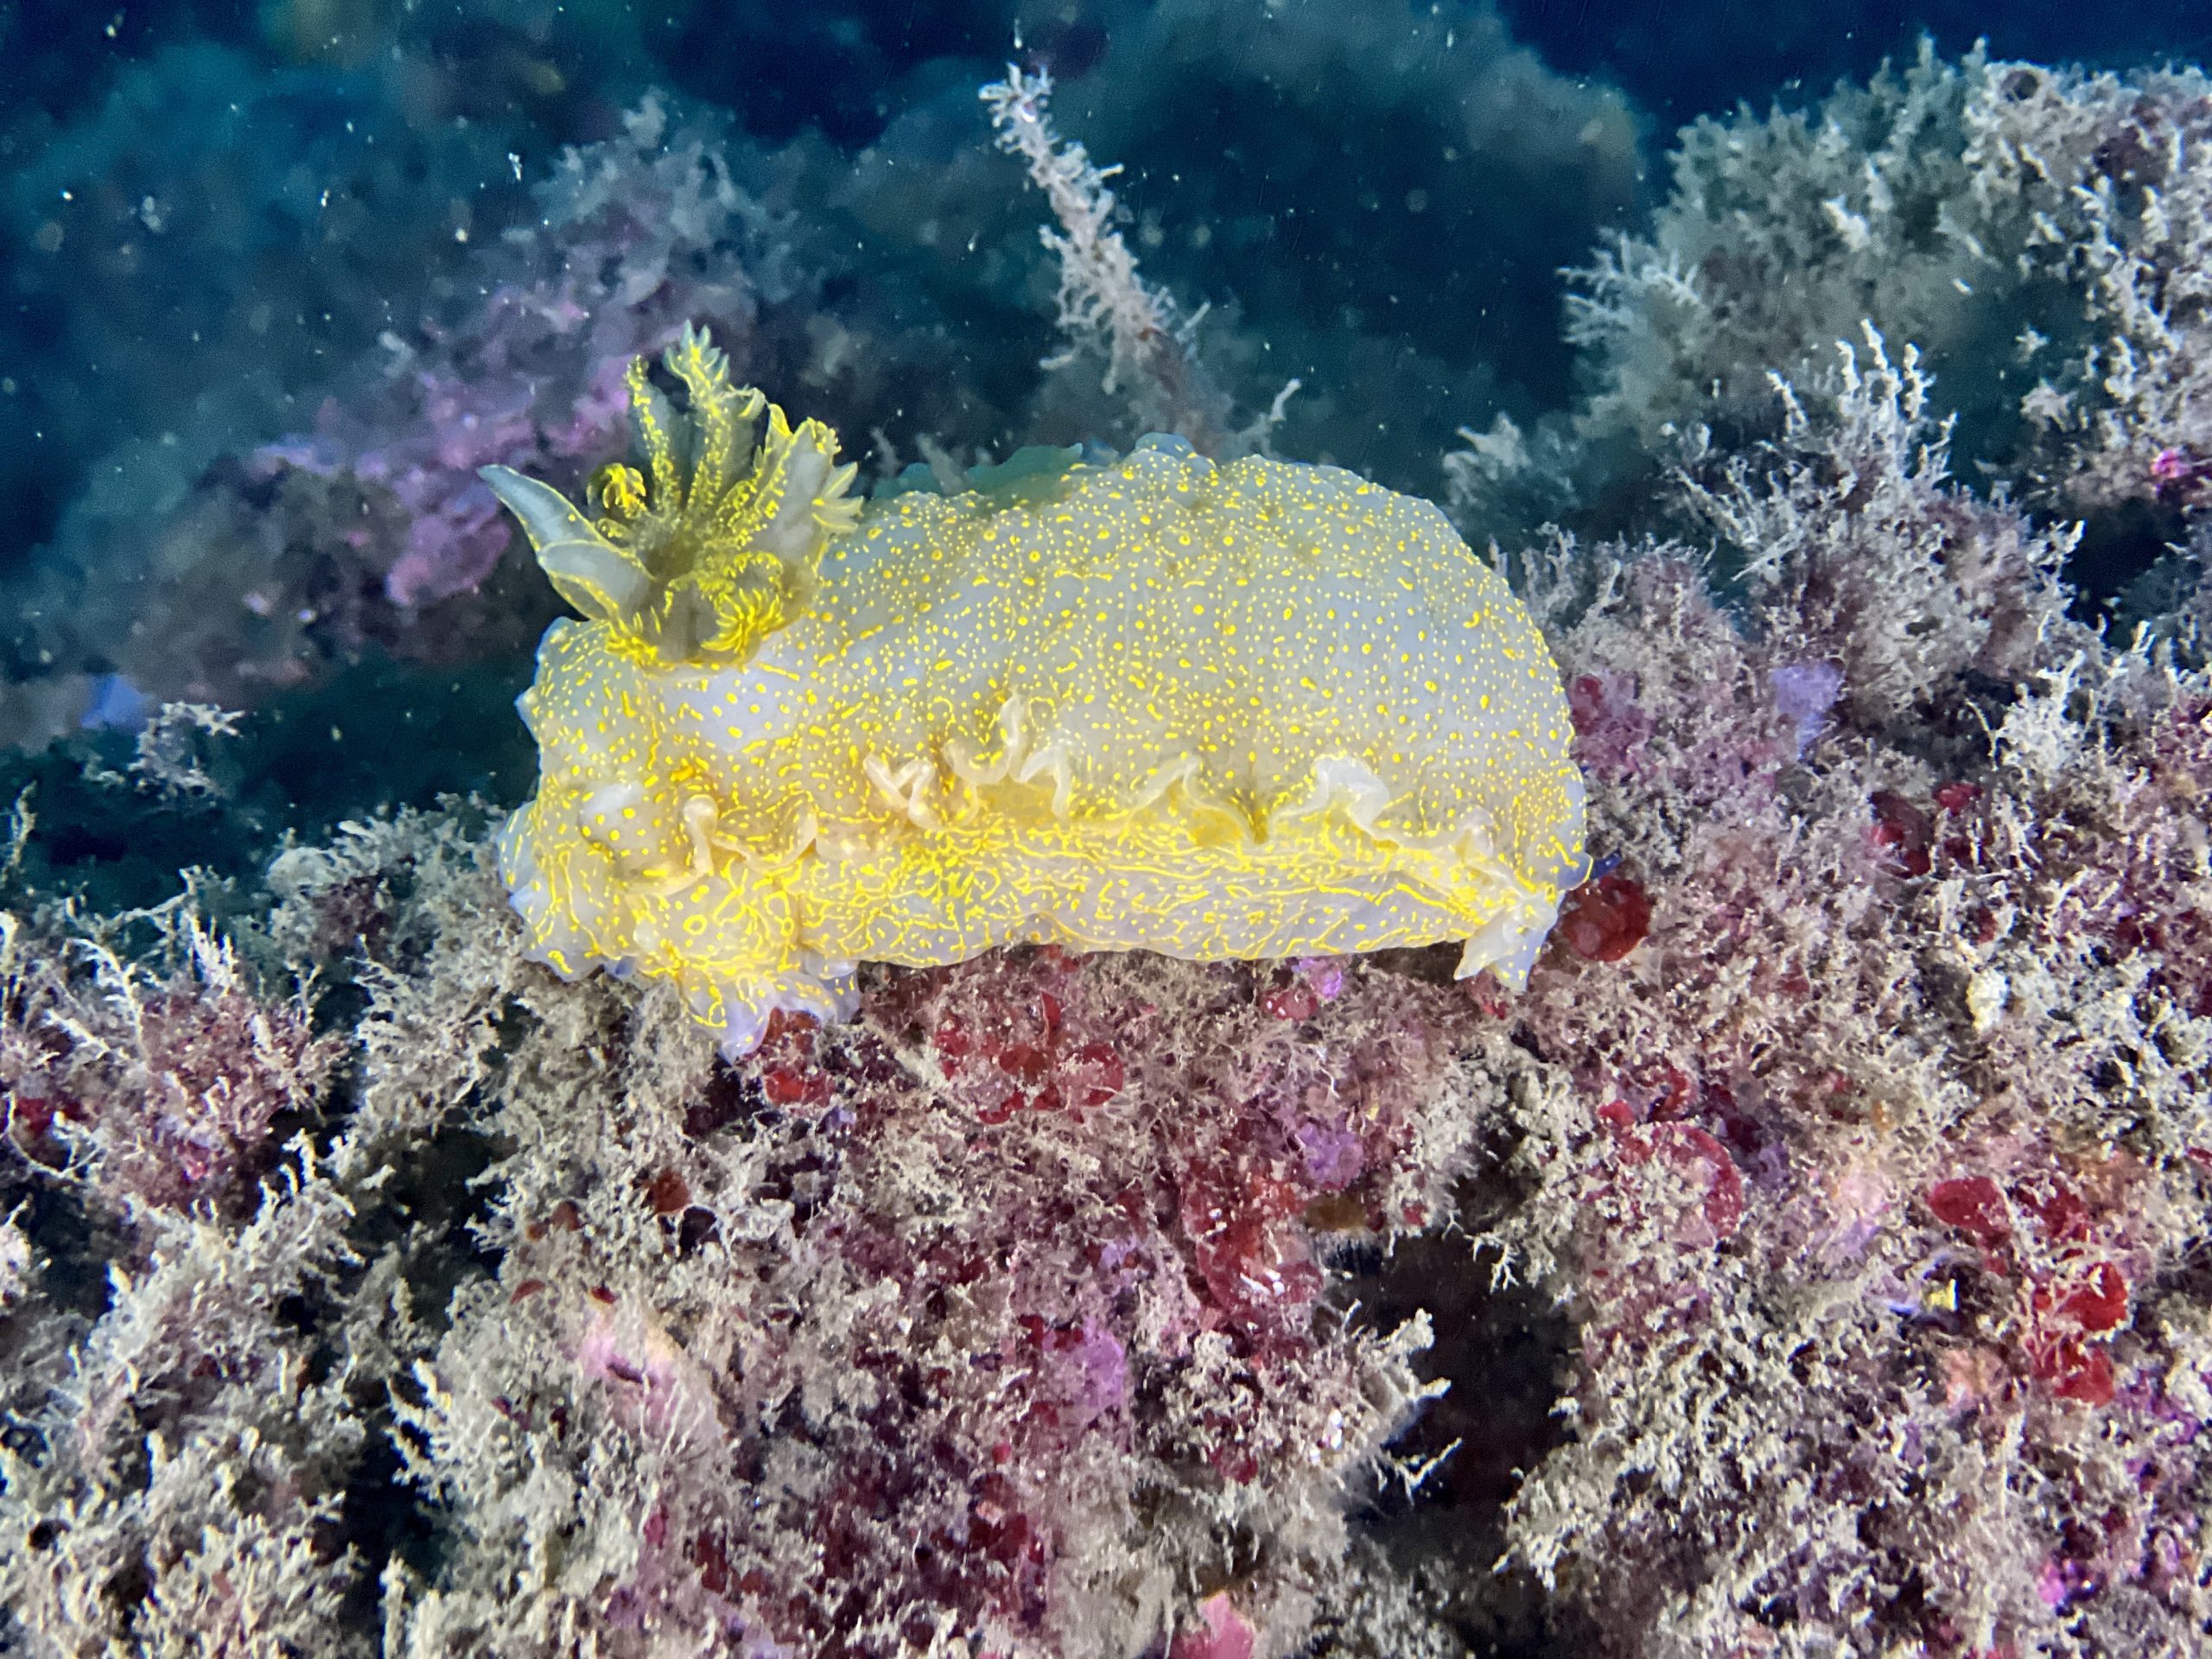 Immersioni alla Gallinara: Il re degli hypselodoris, il tipico nudibranco con il ciuffo. È davvero ciccione, morbido e colorato.